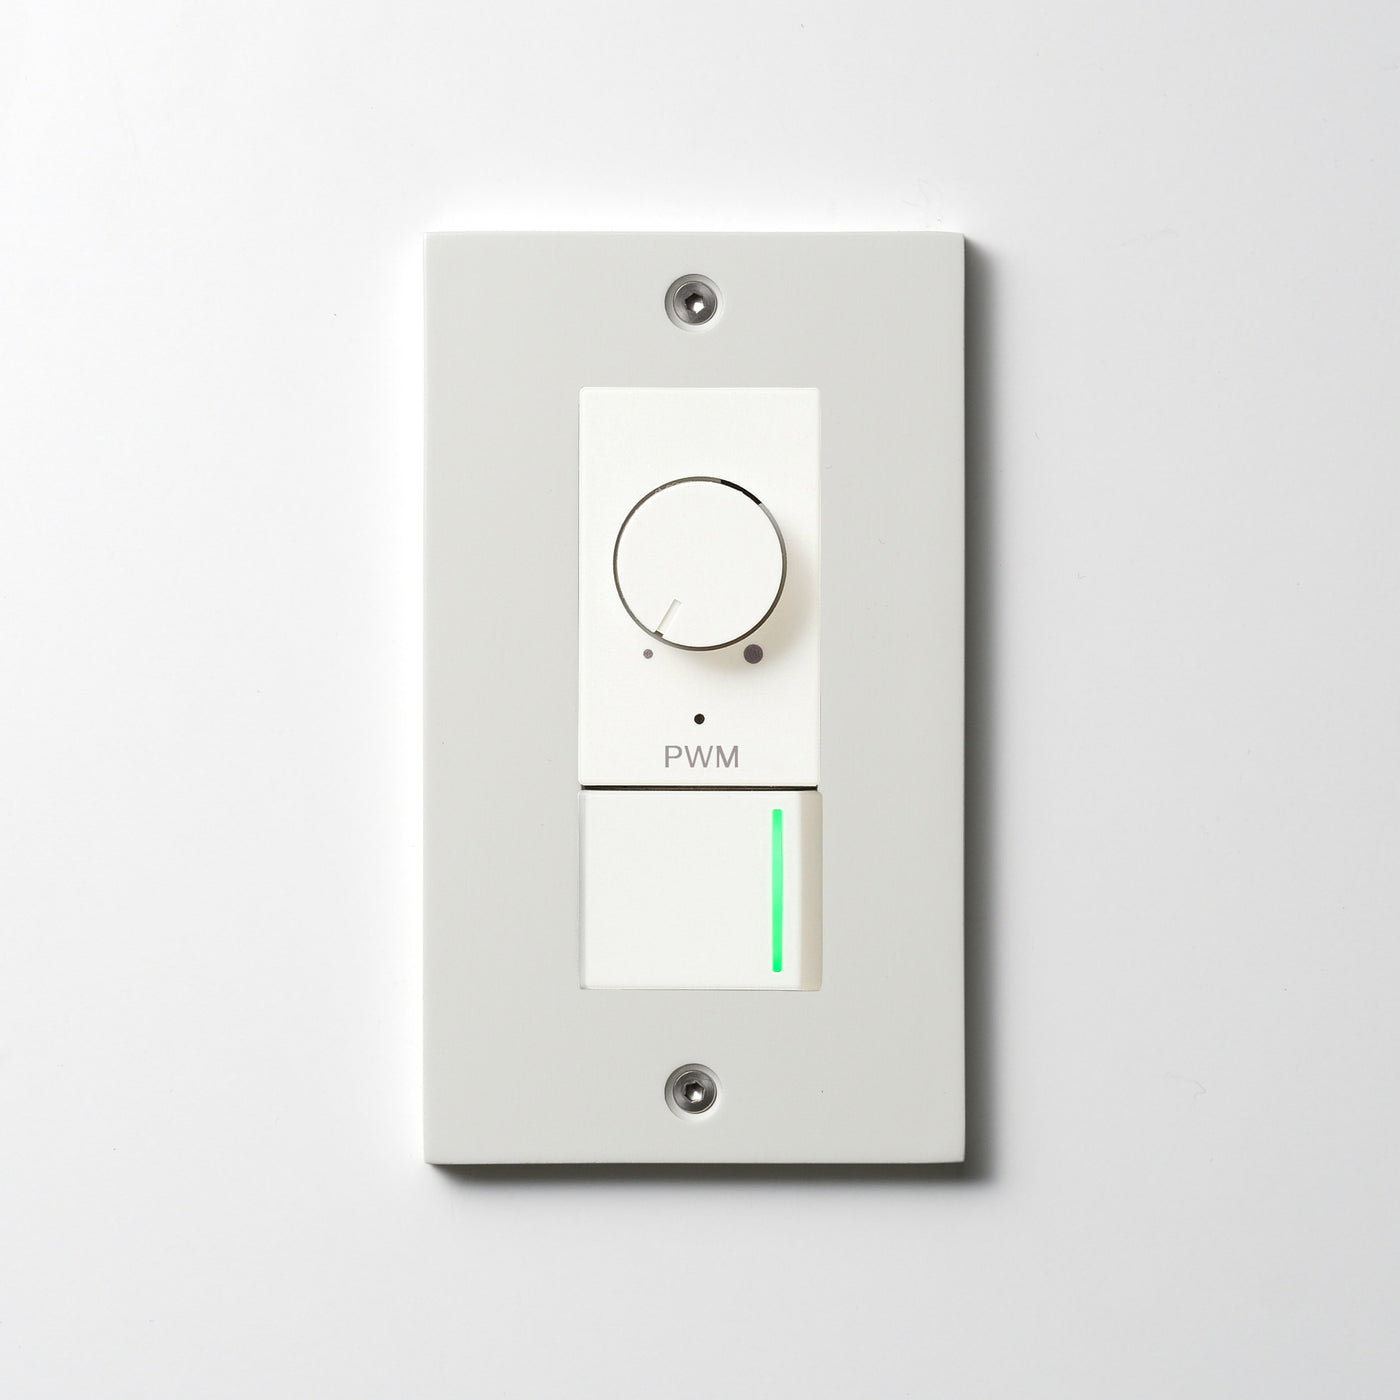 アルミダイキャスト（ホワイト）プレート  <br>+ NK PWM制御方式(1ch)ライトコントロール＋片切、3路ガイドランプ（グリーン）スイッチ　 ホワイト